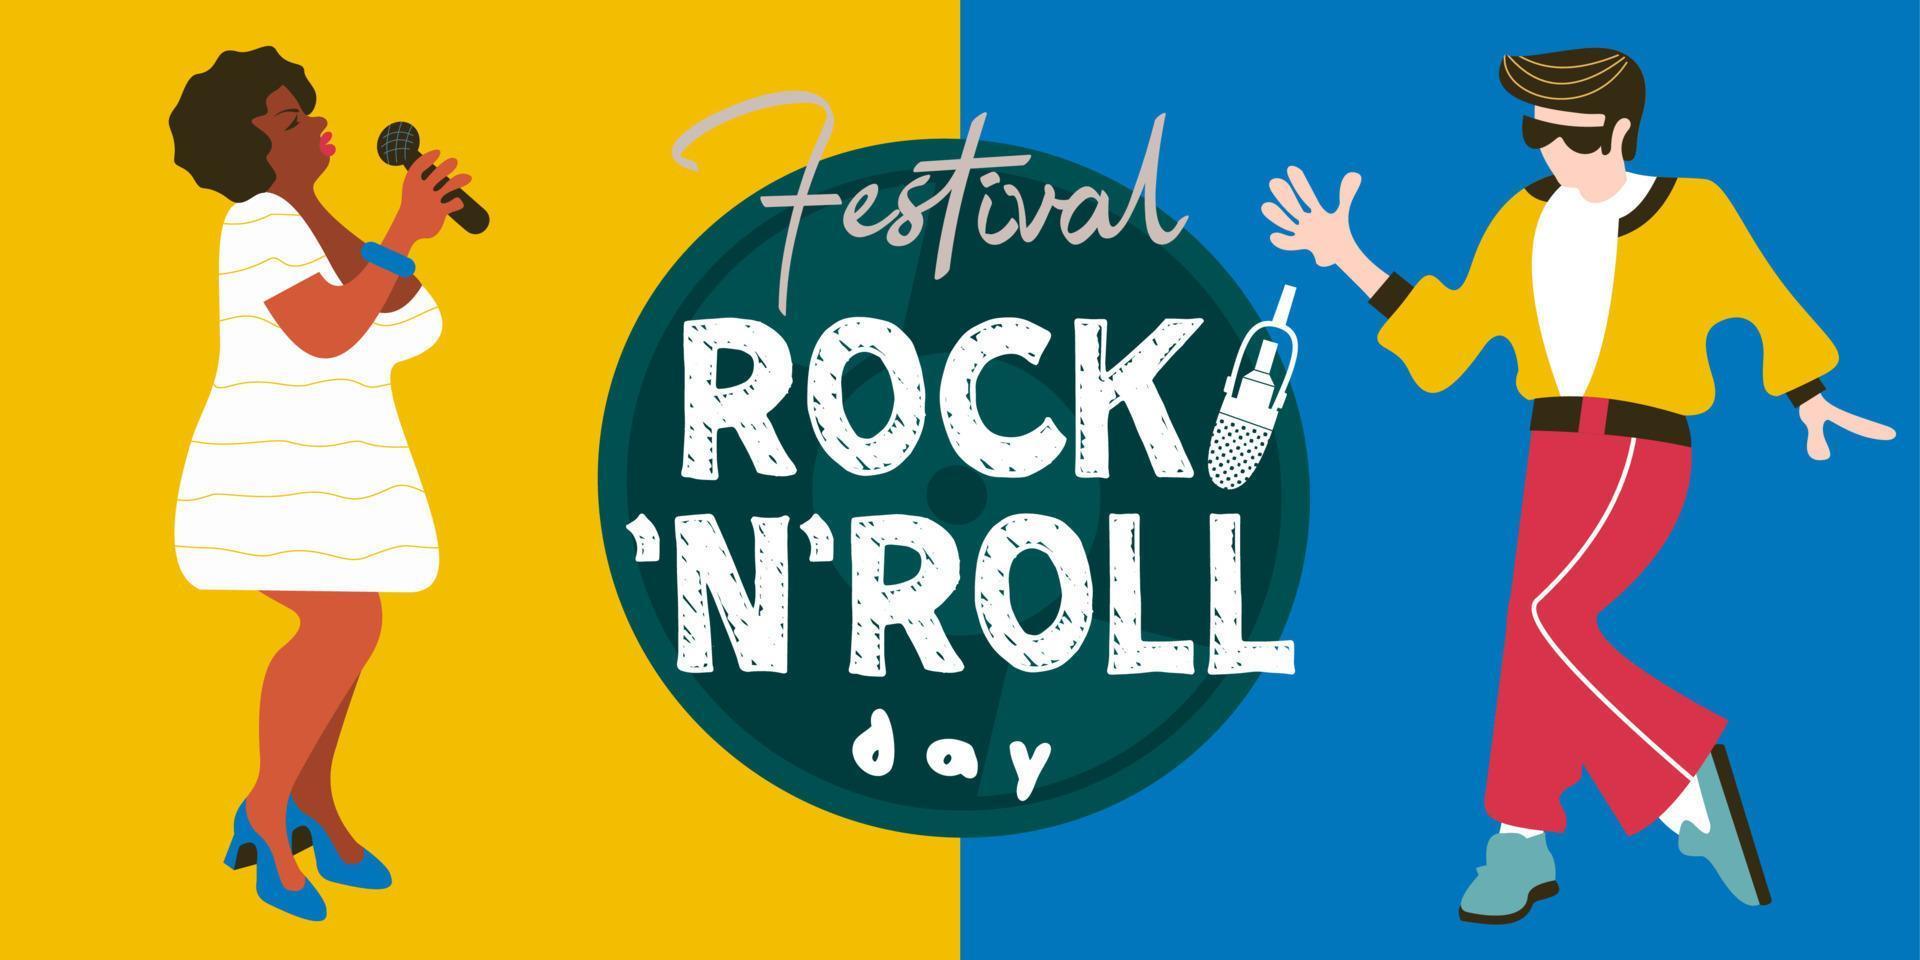 journée internationale du rock and roll. modèle vectoriel pour les affiches du festival, les soirées rock and roll.